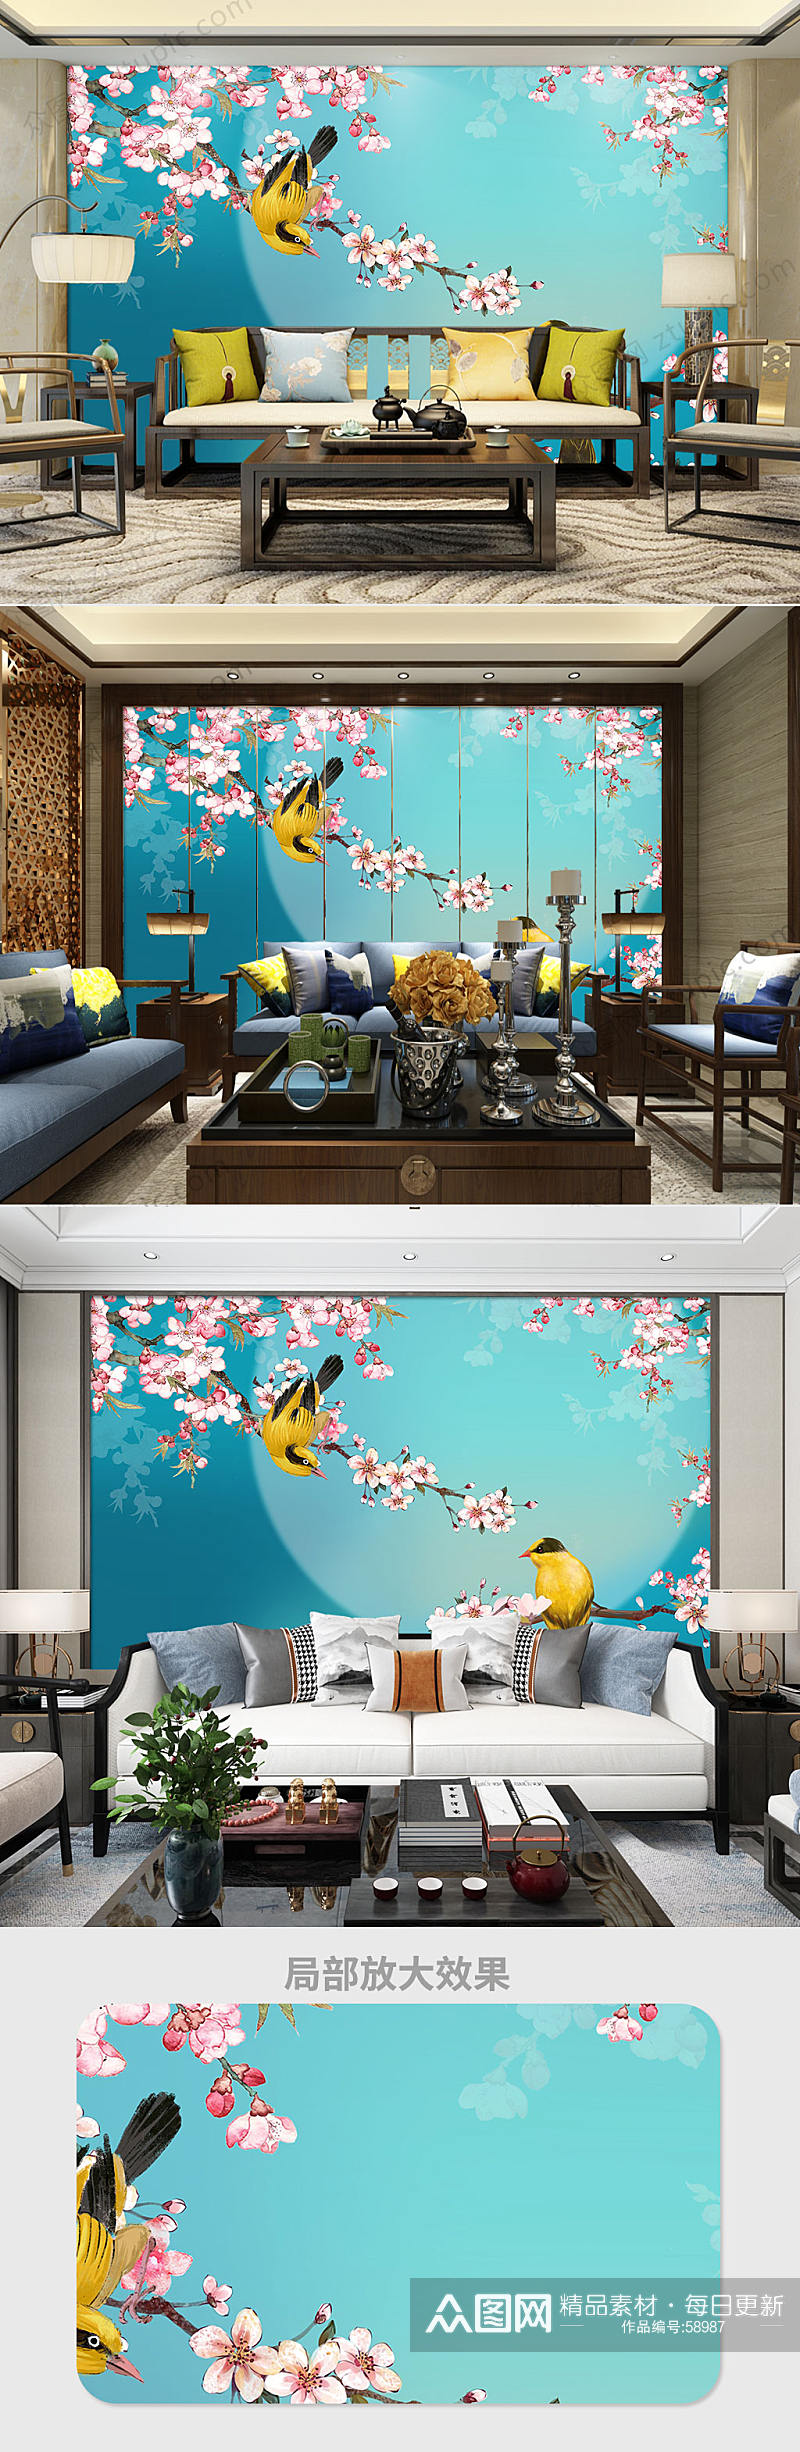 古典中国风电视背景墙素材